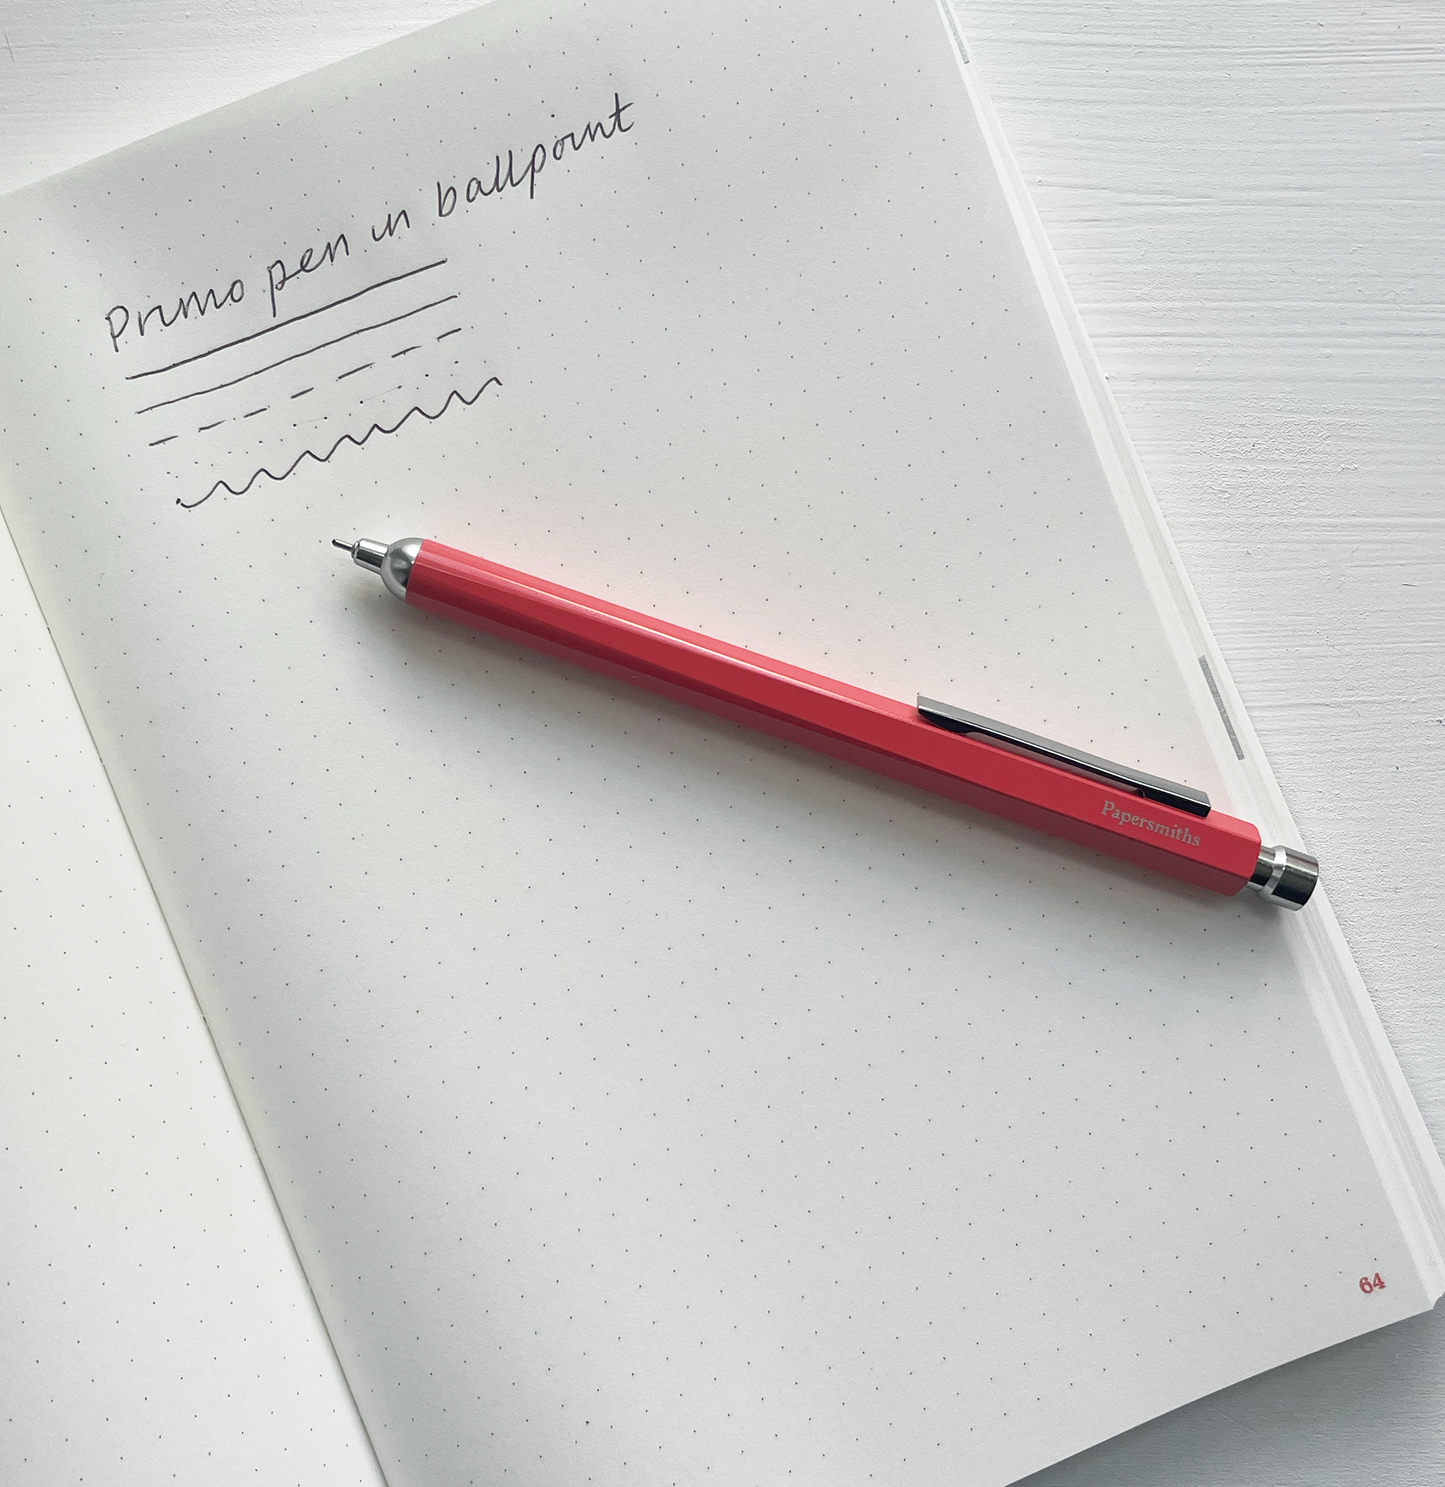 Morello Notebook, Pen and Band Trio - Primo Ballpoint Pen / Dot Grid Paper